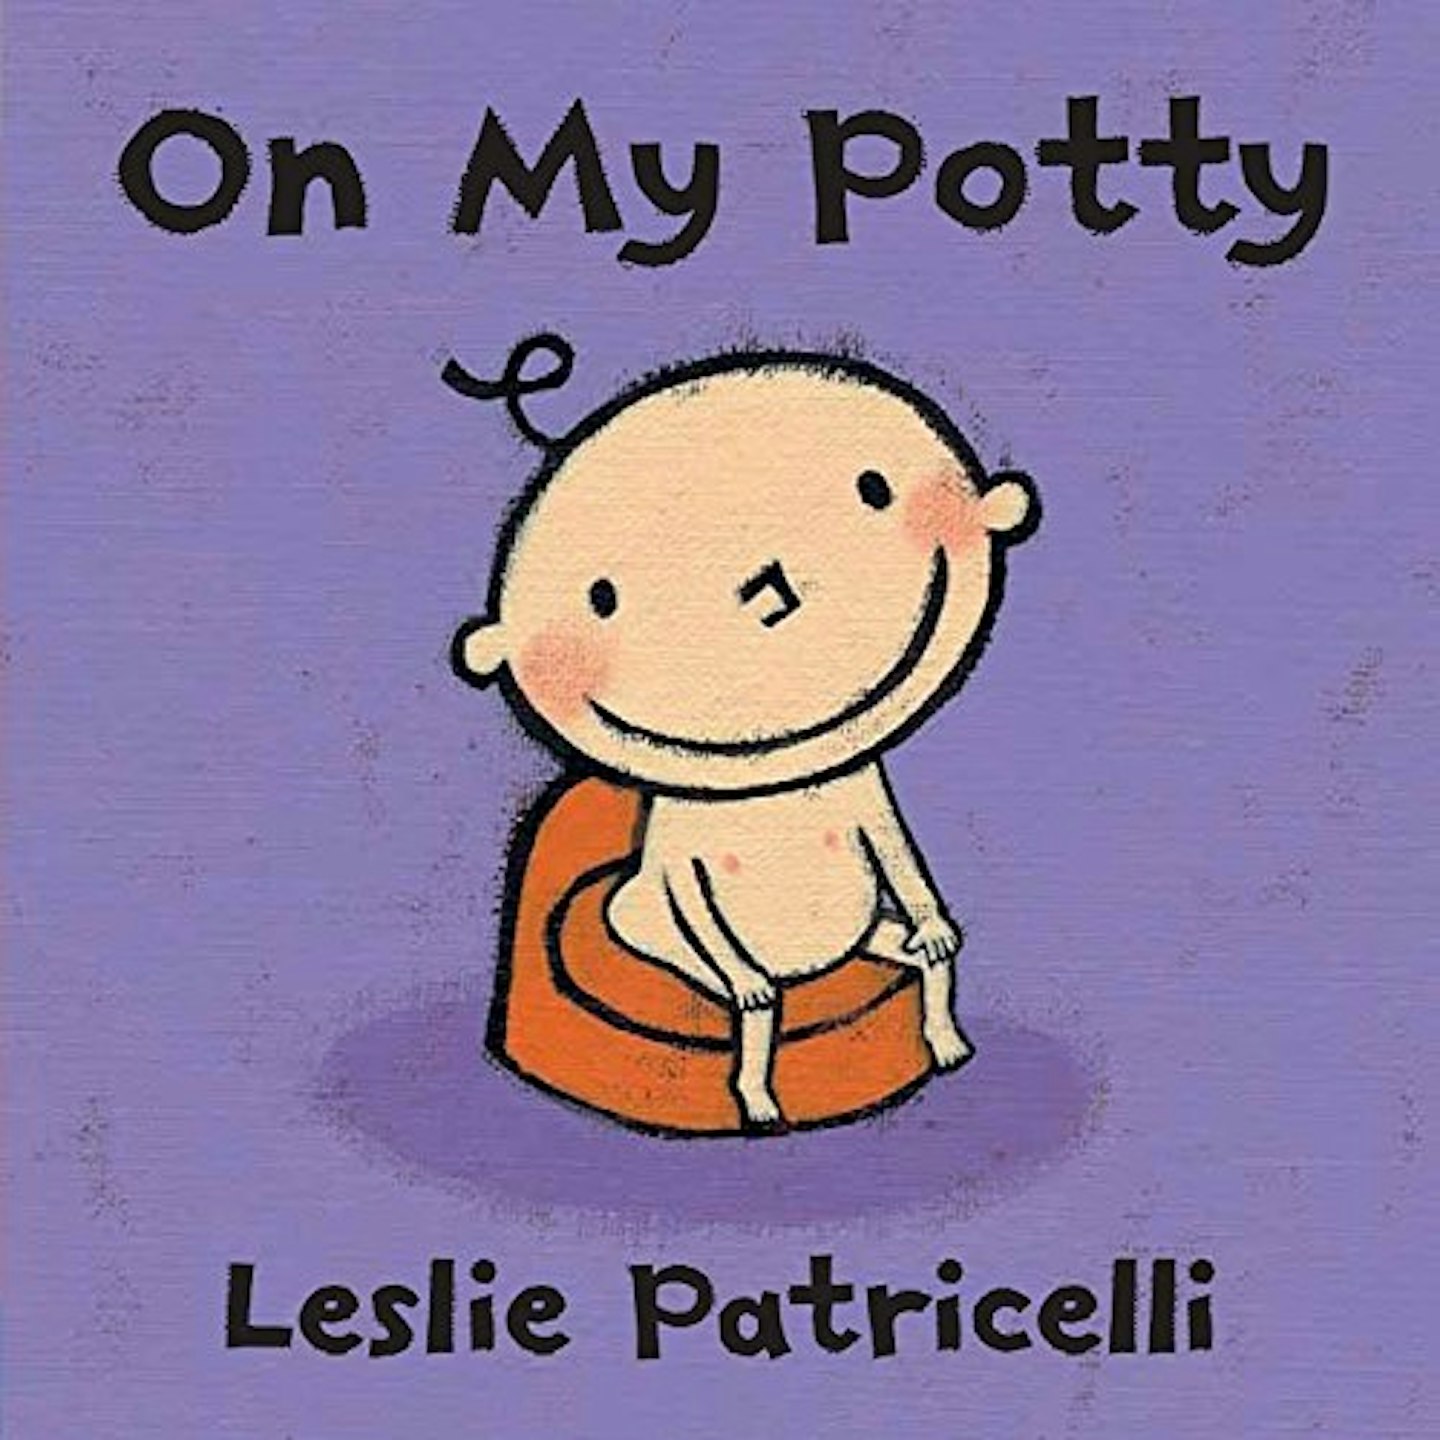 On My Potty by Leslie Patricelli